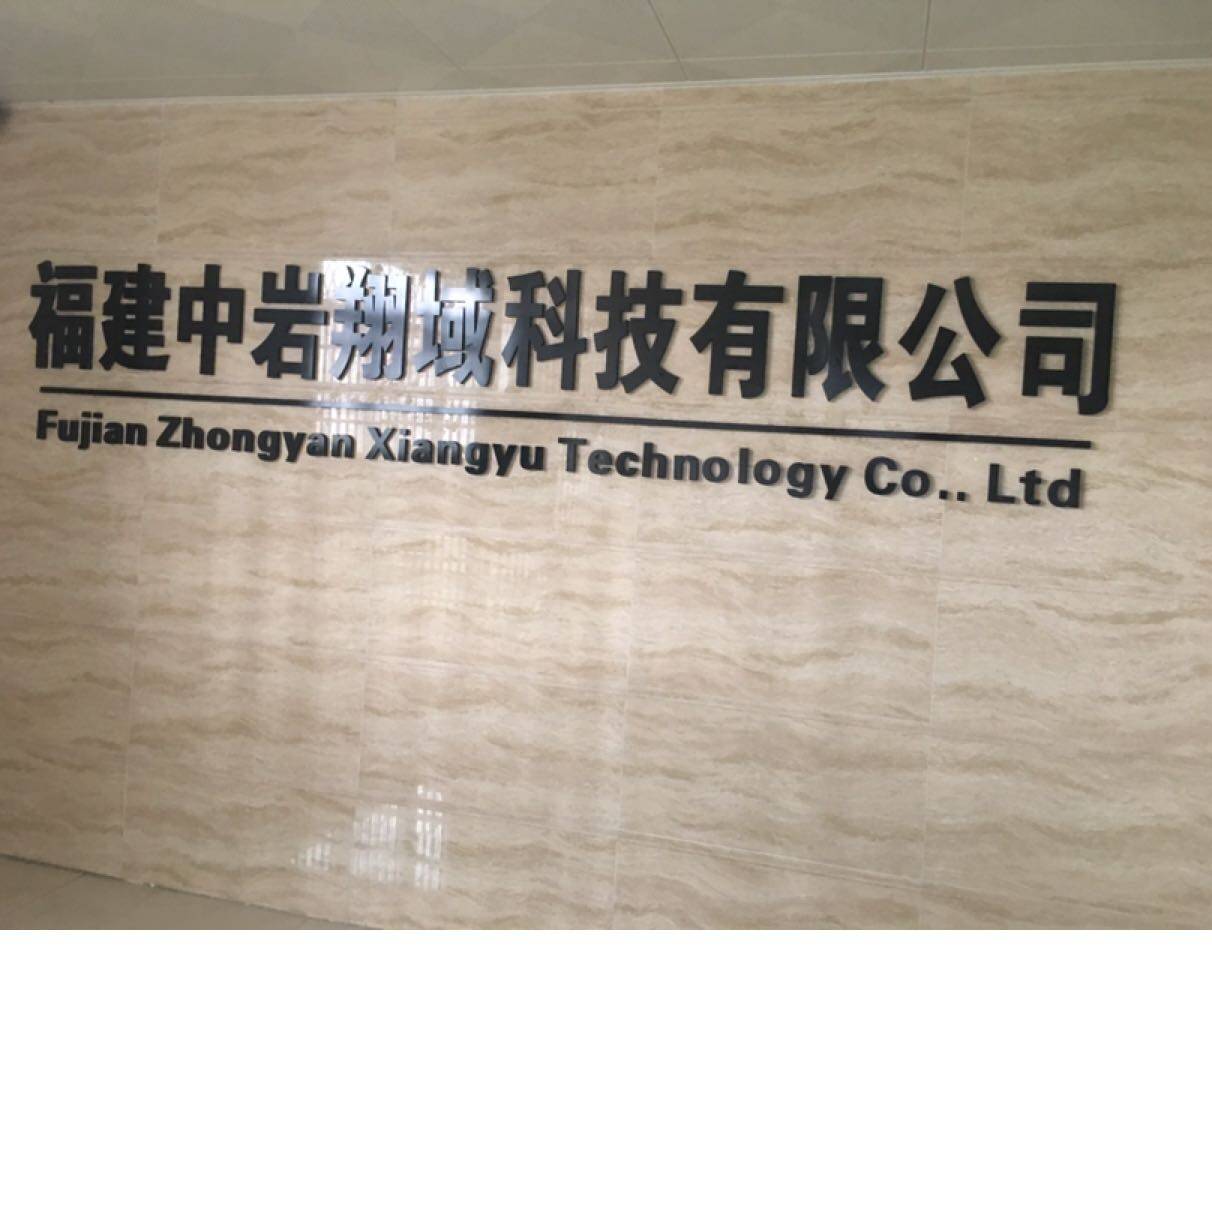 福建中岩翔域科技有限公司logo